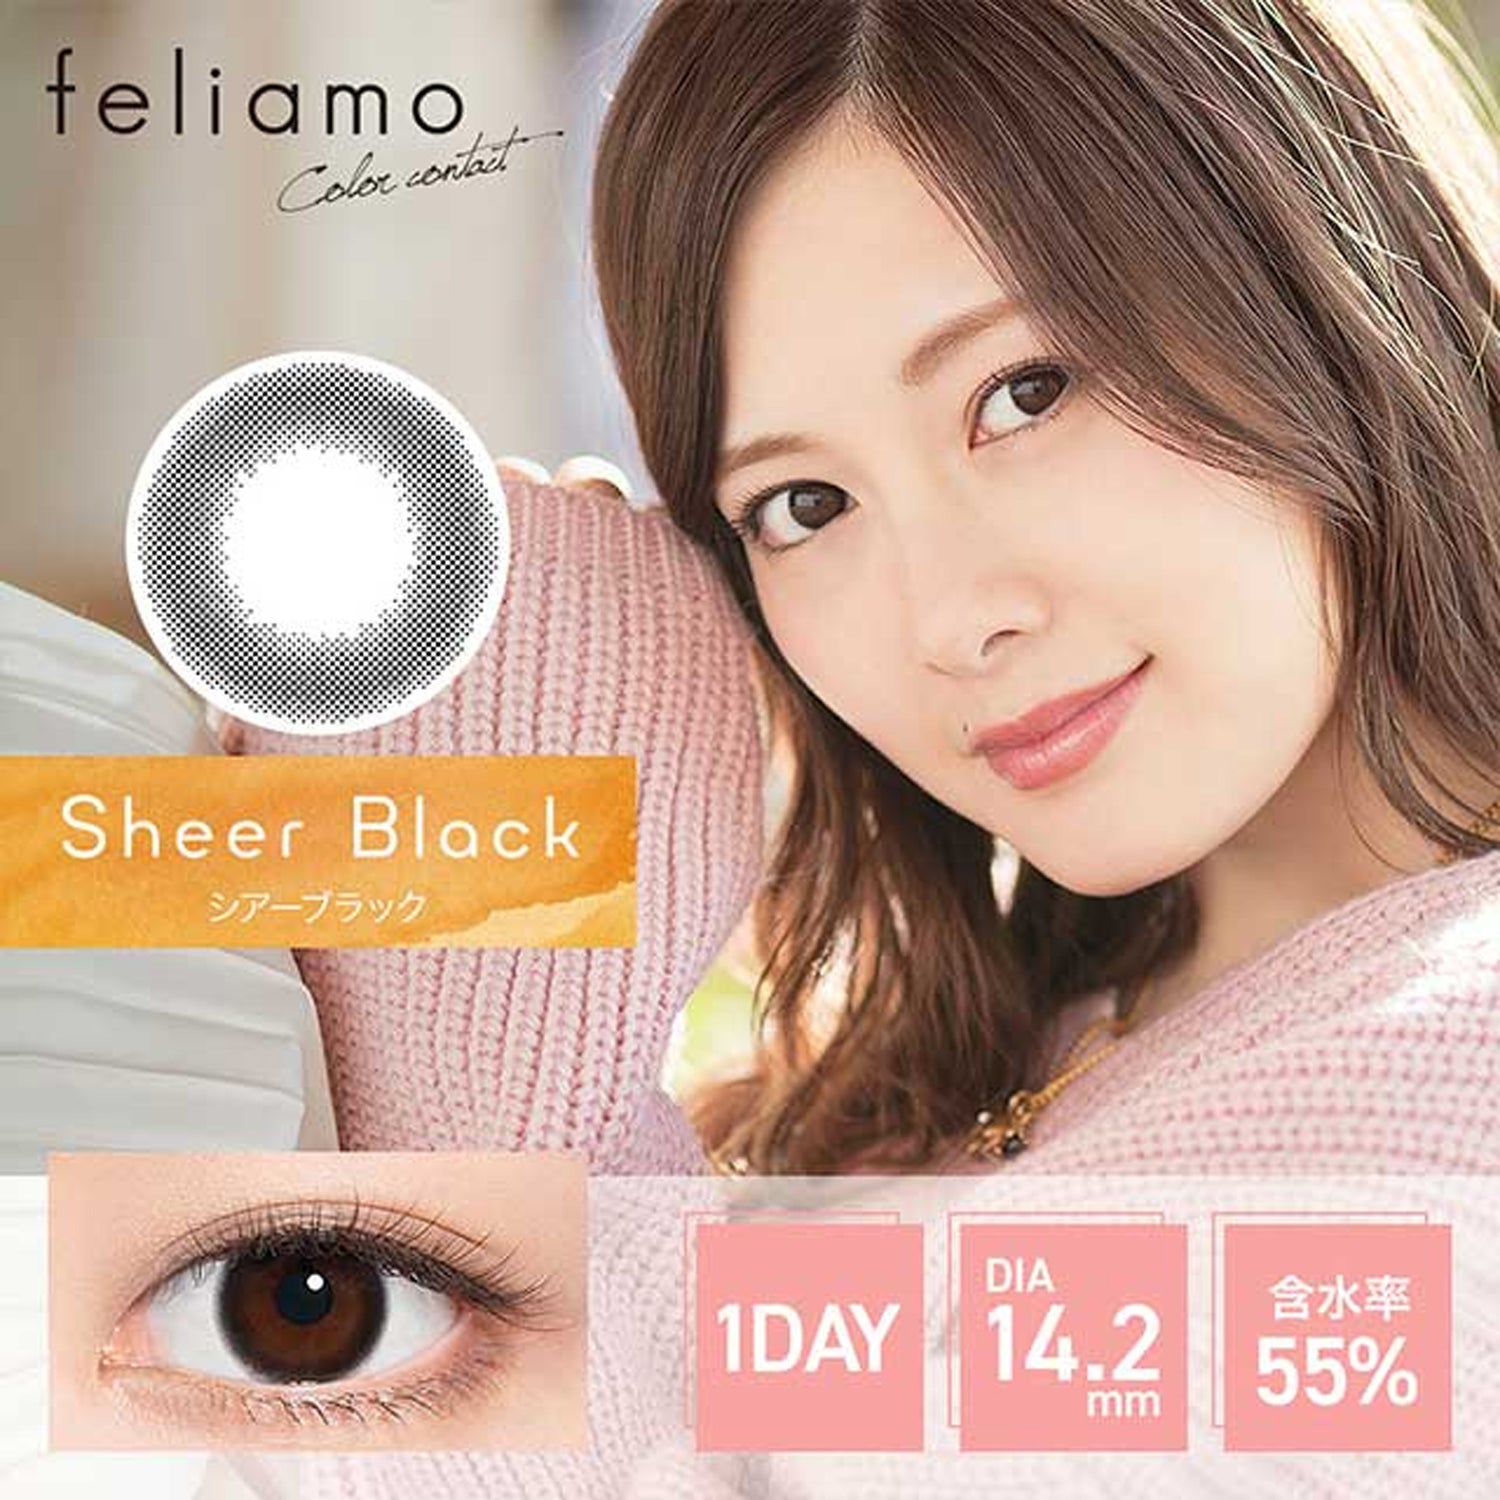 Feliamo Daily Contact Lenses-Sheer Black 10lenses